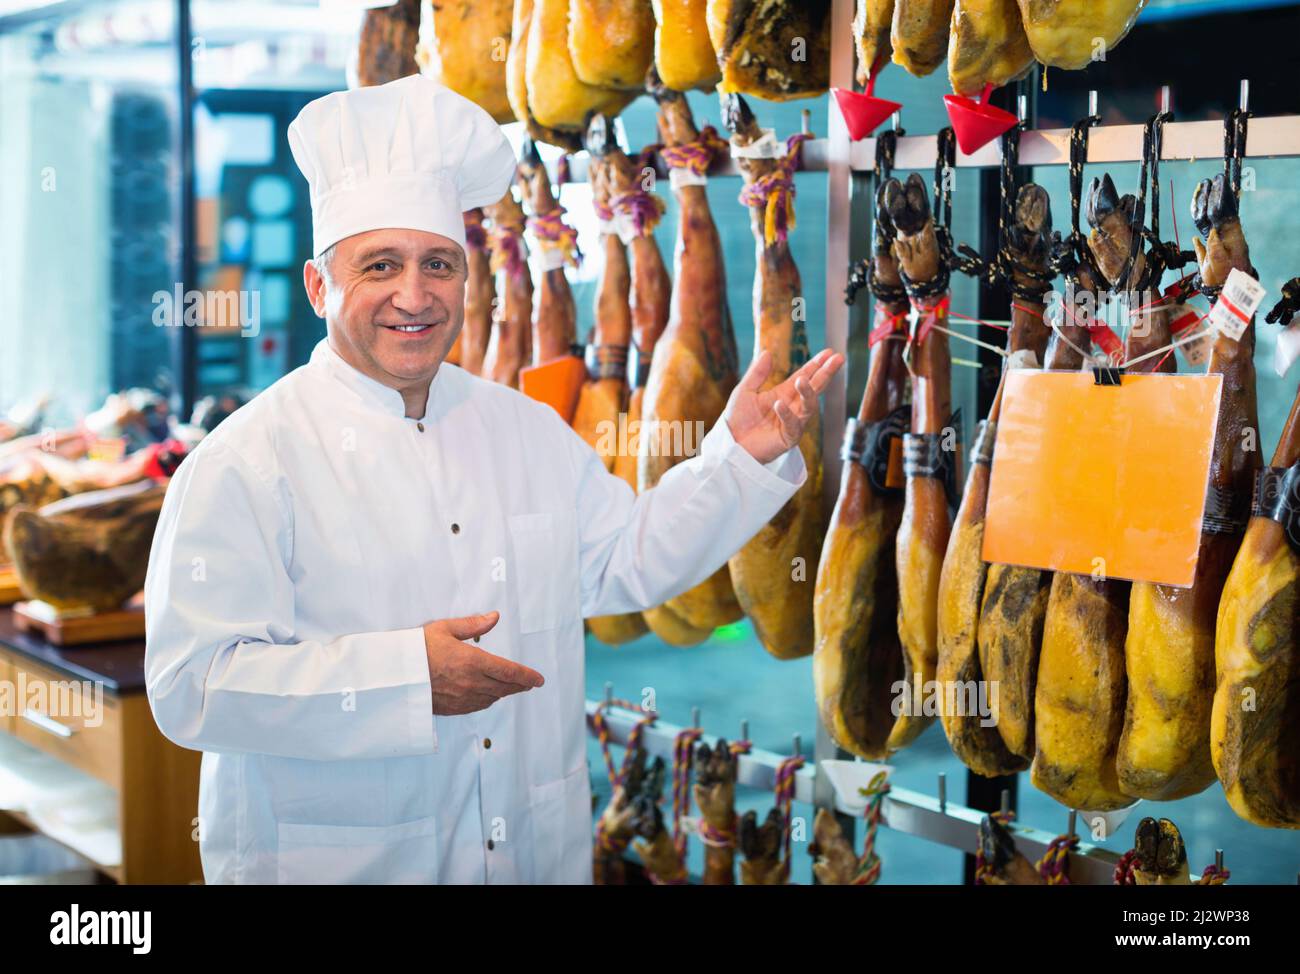 Porträt eines reifen Ladenmanns, der spanischen Jamon anbietet Stockfoto